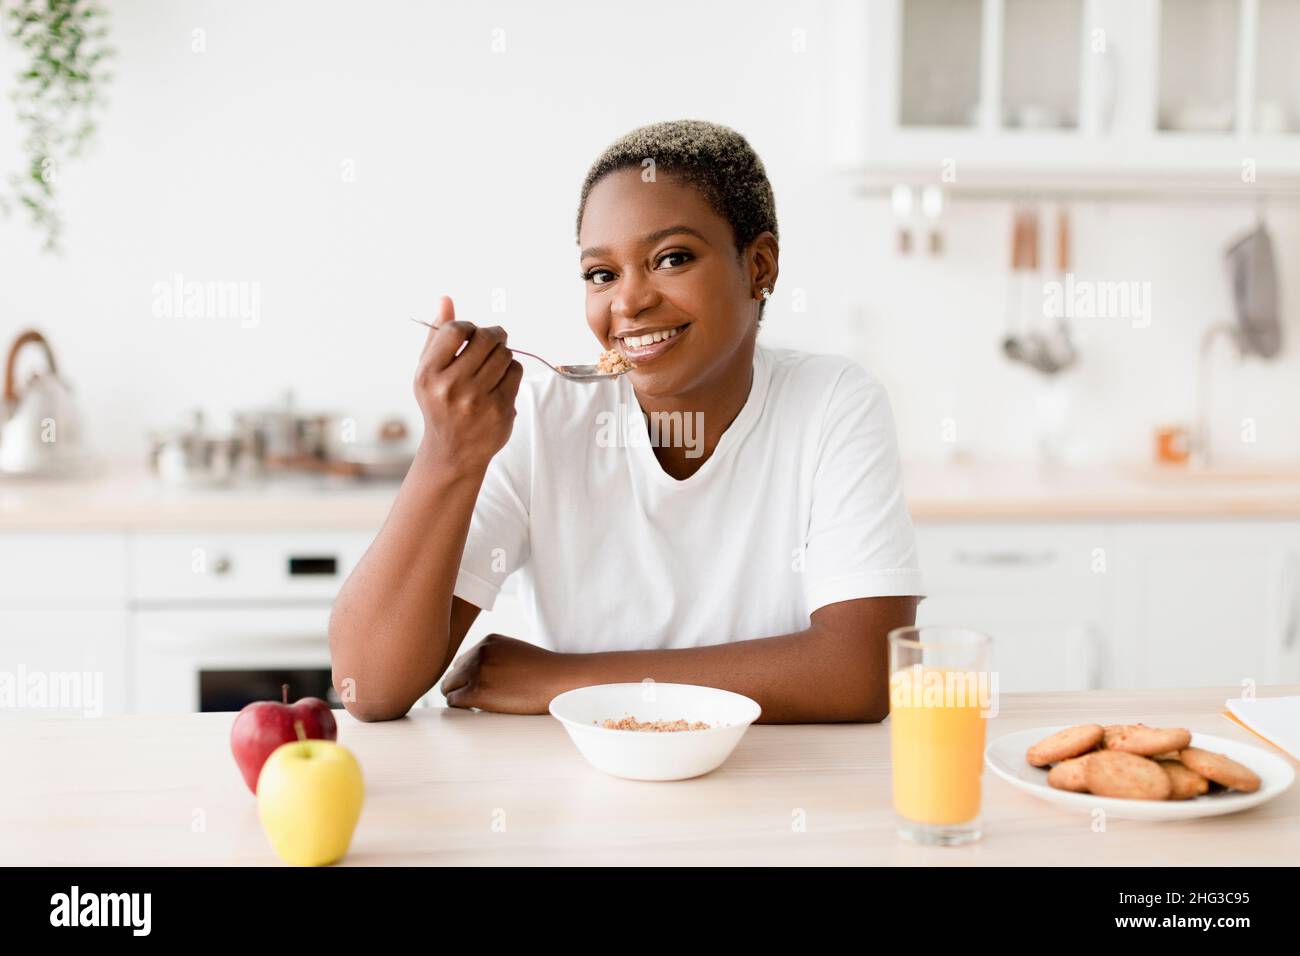 Souriant jeune femme noire attrayante mangeant porridge s'assoit à table avec des biscuits, jus et pommes Banque D'Images